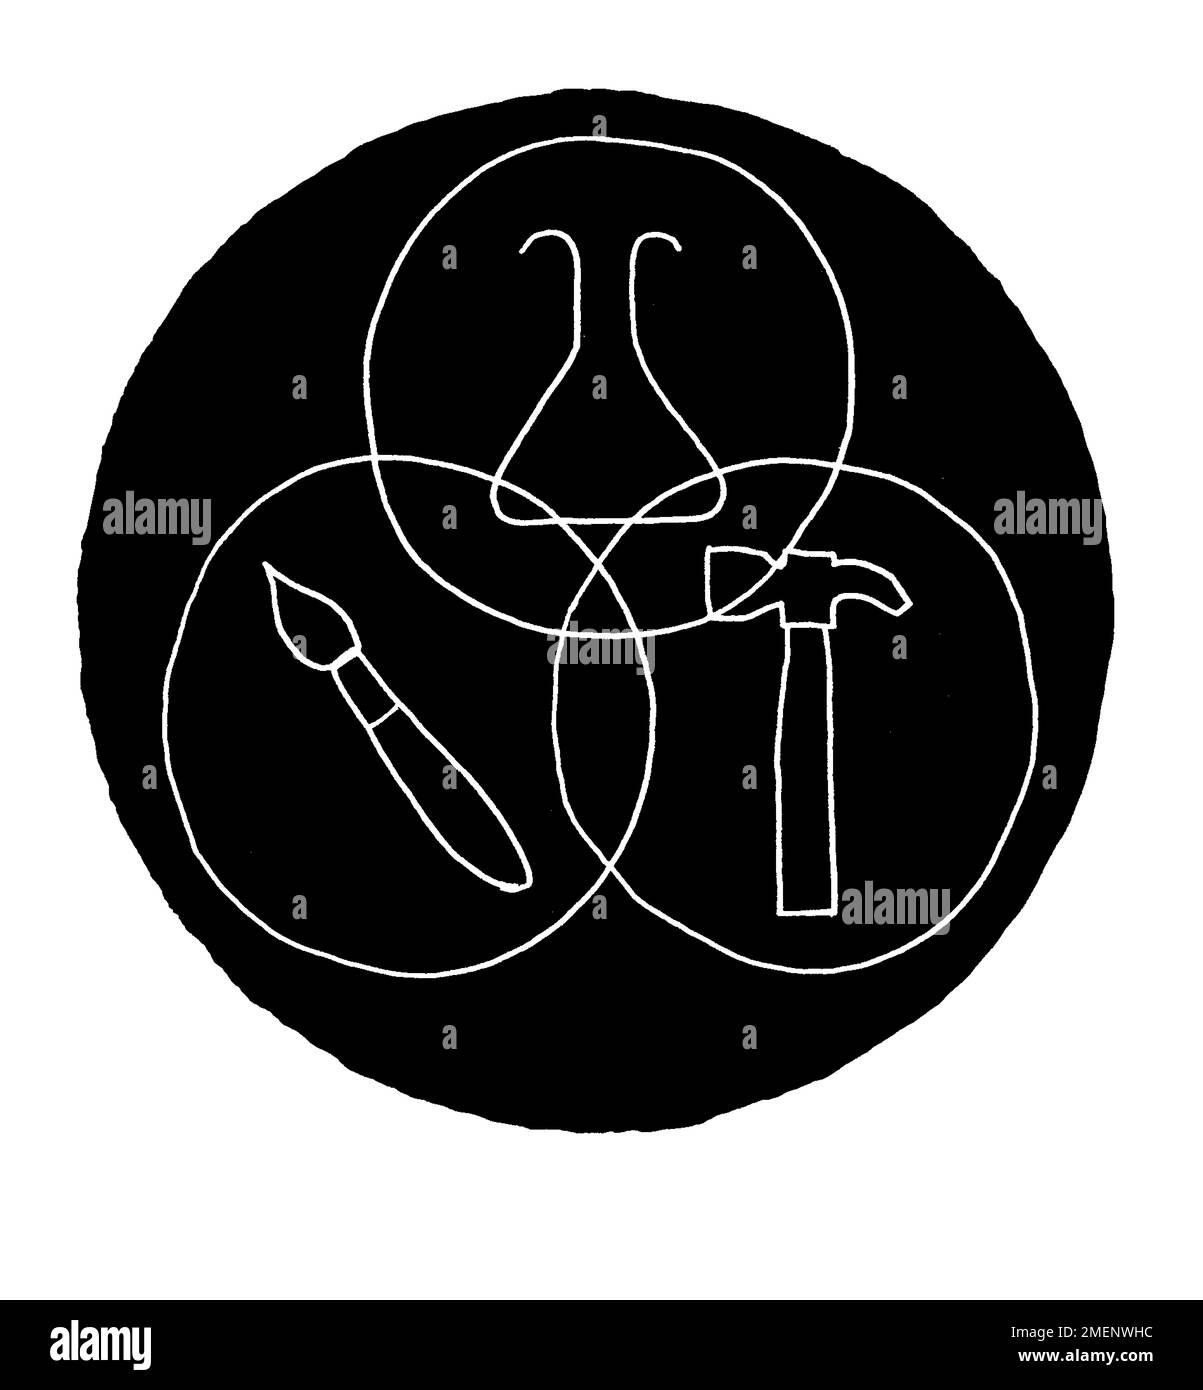 Illustrazione in bianco e nero di un cerchio contenente i contorni di un pennello, di un becher scientifico e di un martello, che rappresentano l'arte, la scienza e l'artigianato Foto Stock